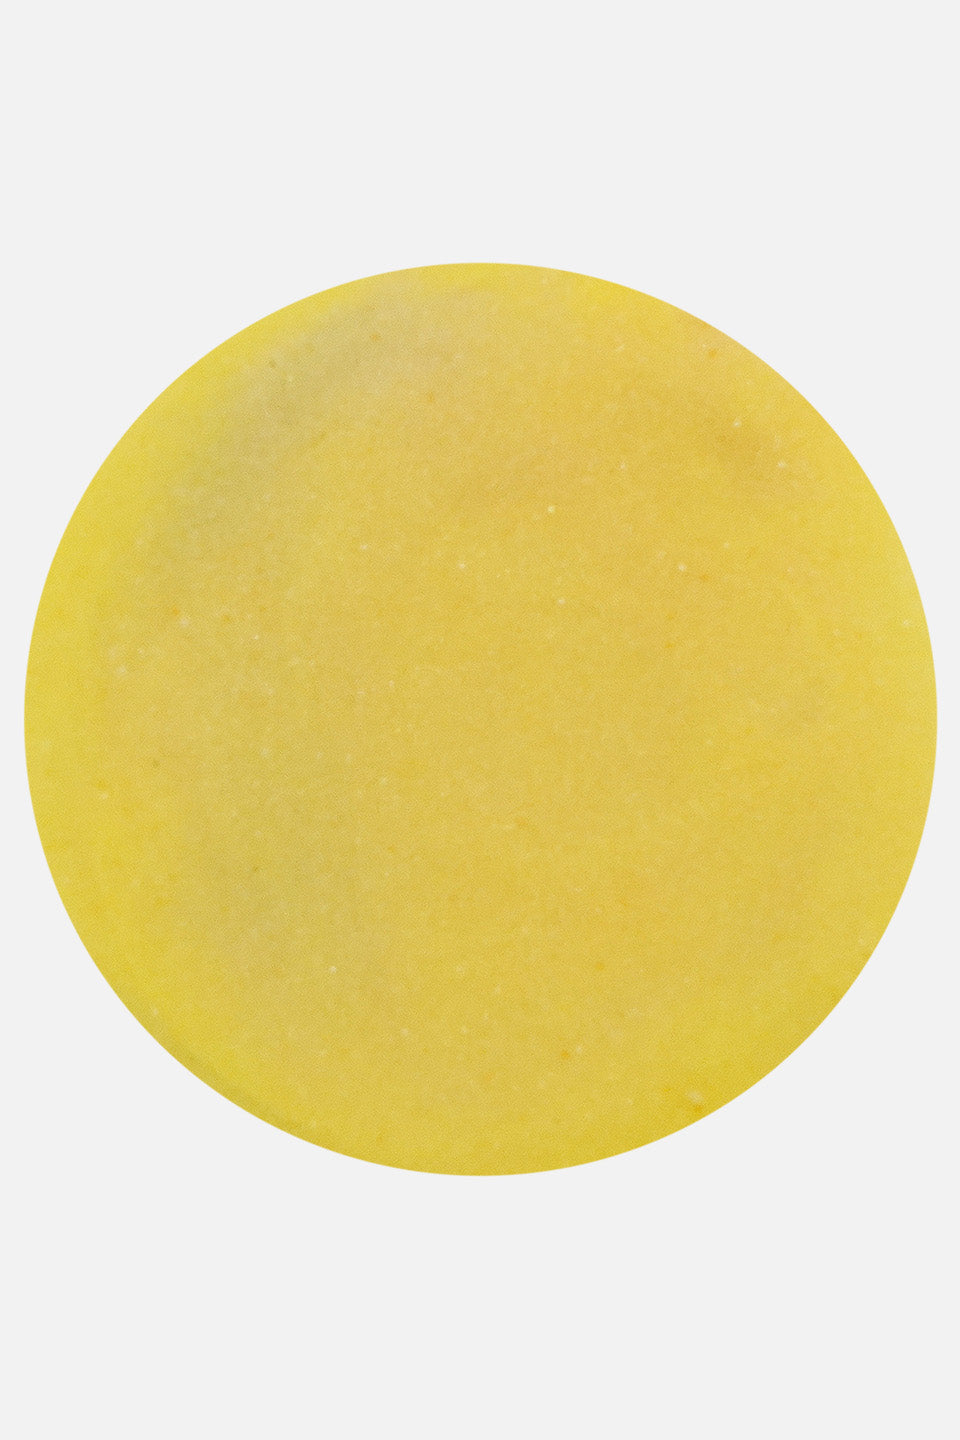 Polvere acrilica giallo limone 5 g